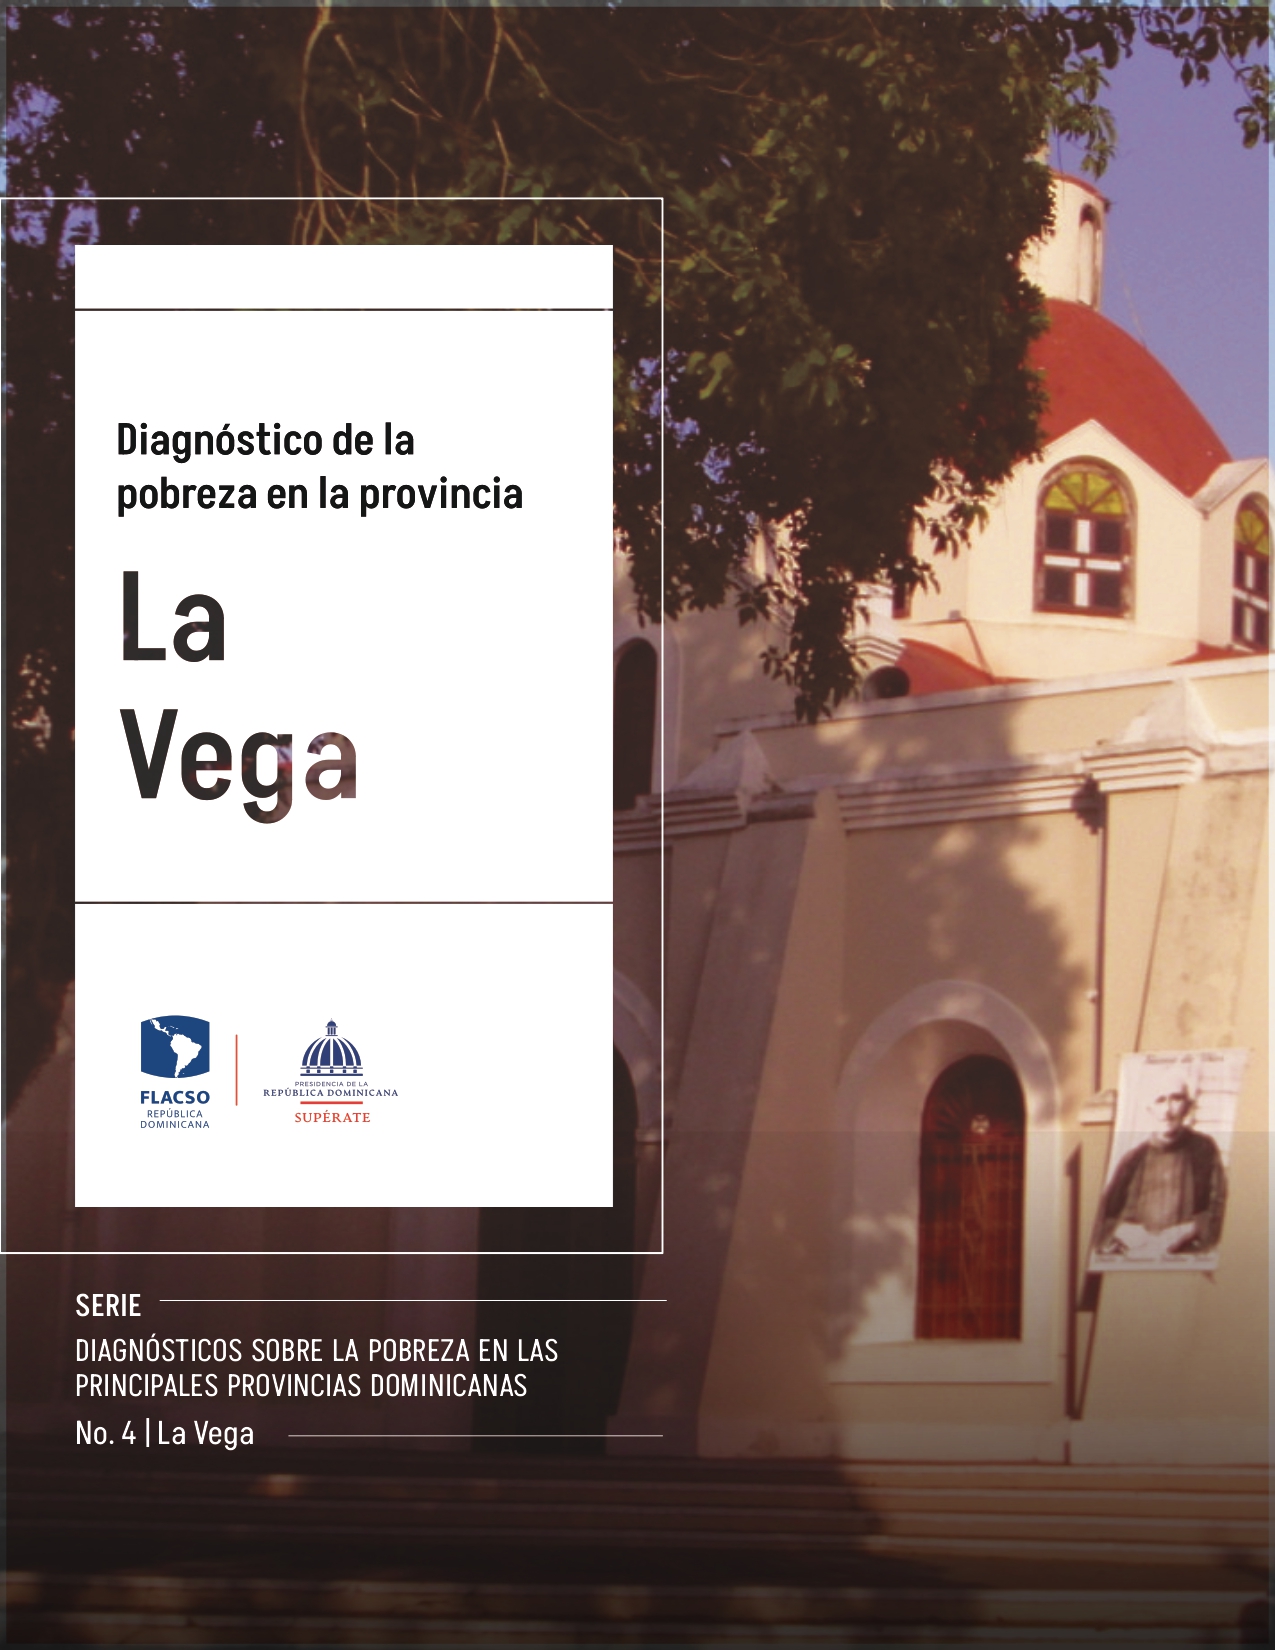 Perfil territorial No. 4 Provincia La Vega 1 page 0001